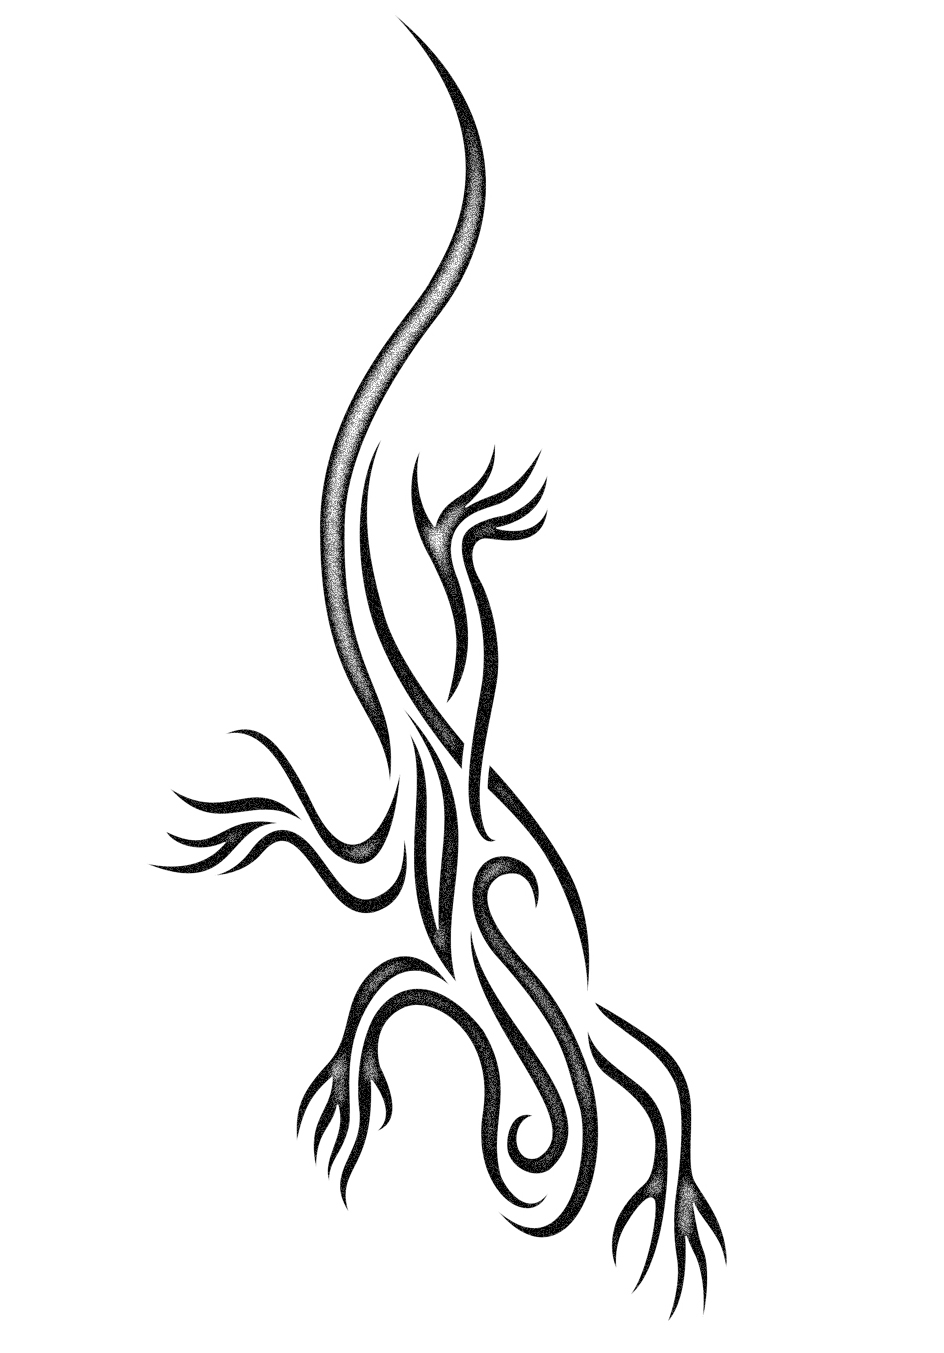 Tribal Lizard tattoo design